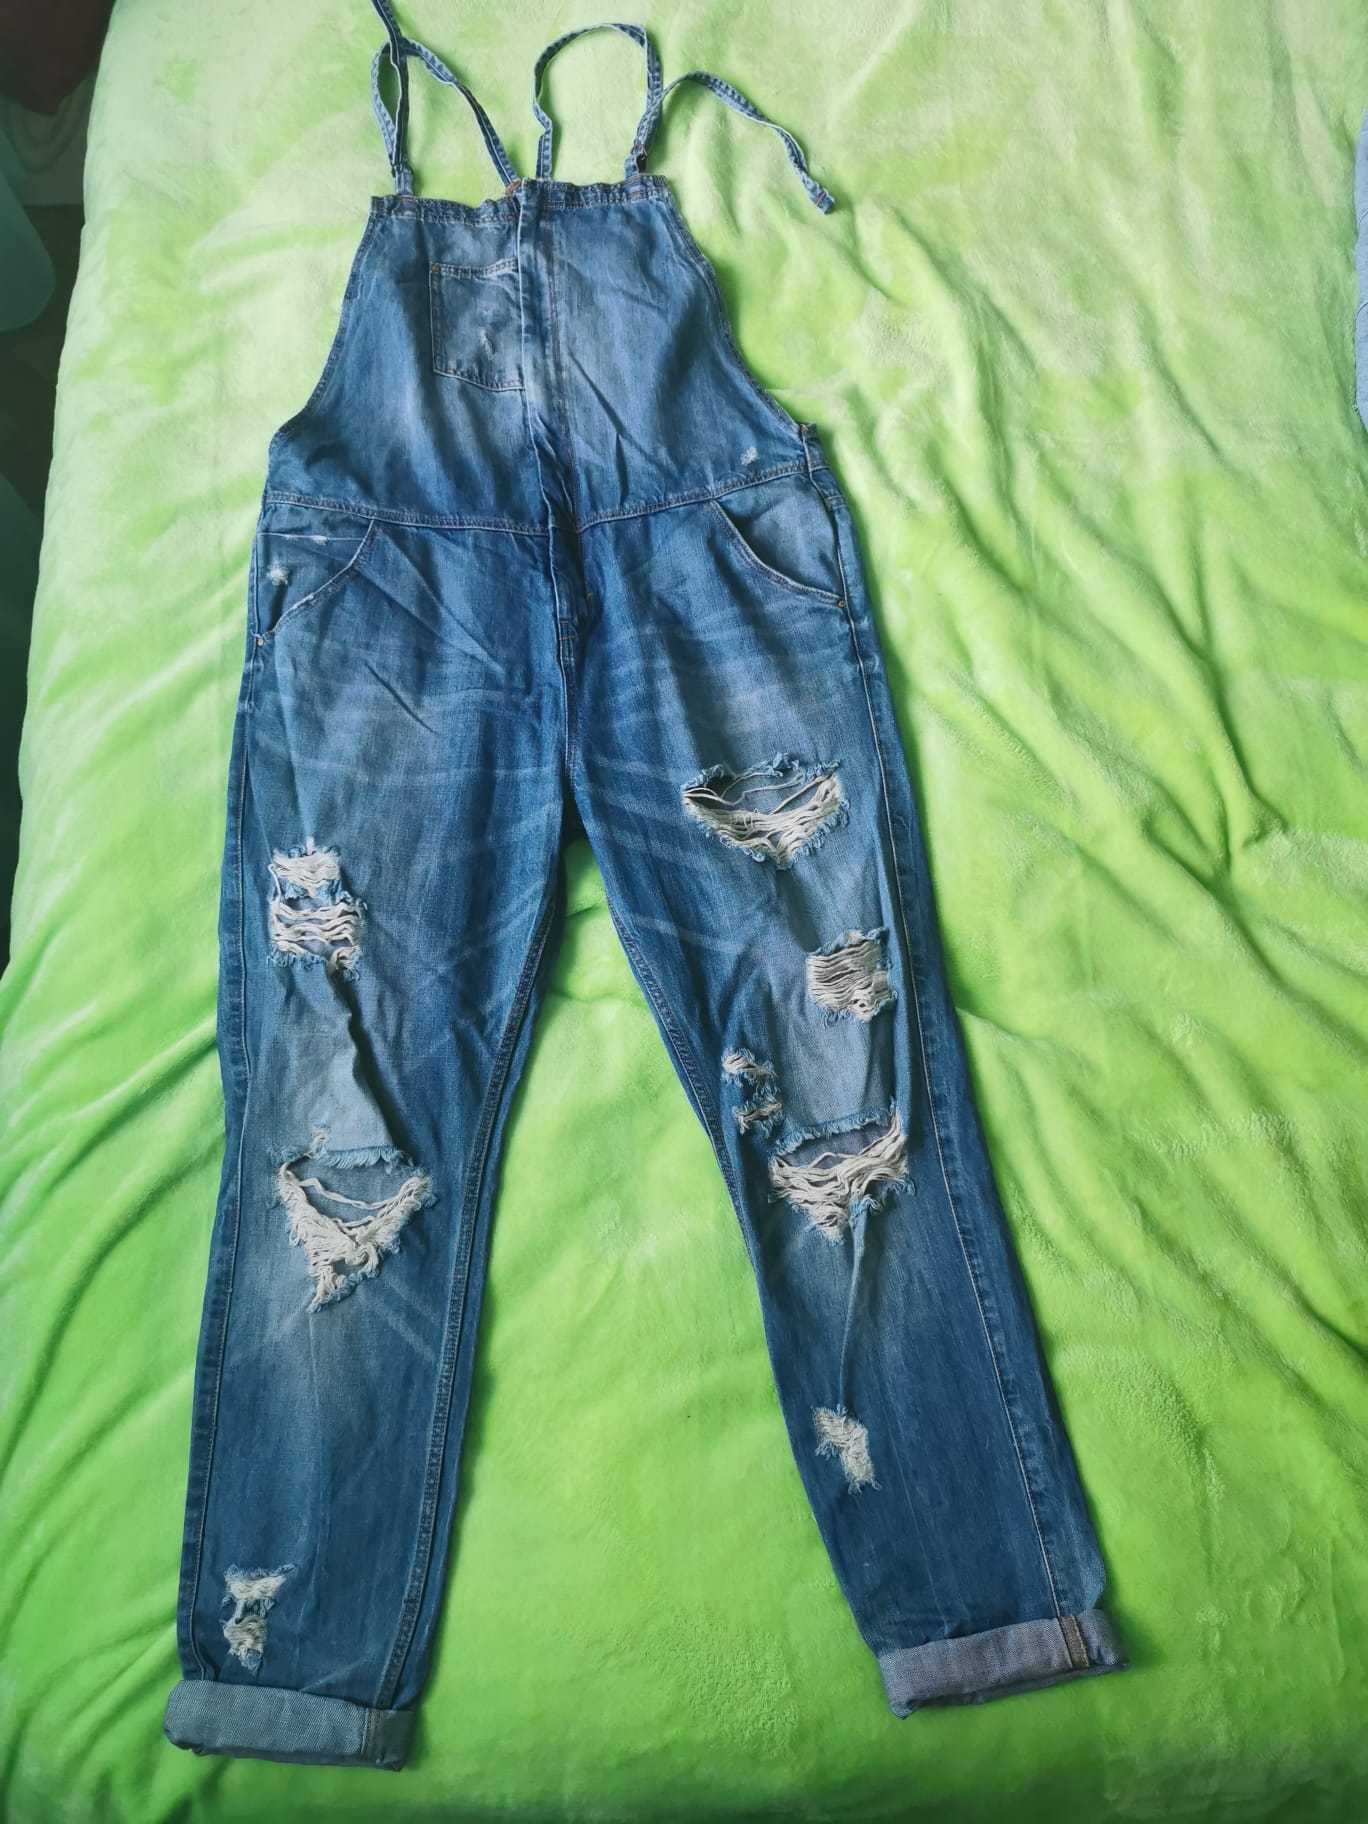 Vând salopetă jeans Zara. Măr. 30 (L)/sarafan C&A. Stare foarte bună.